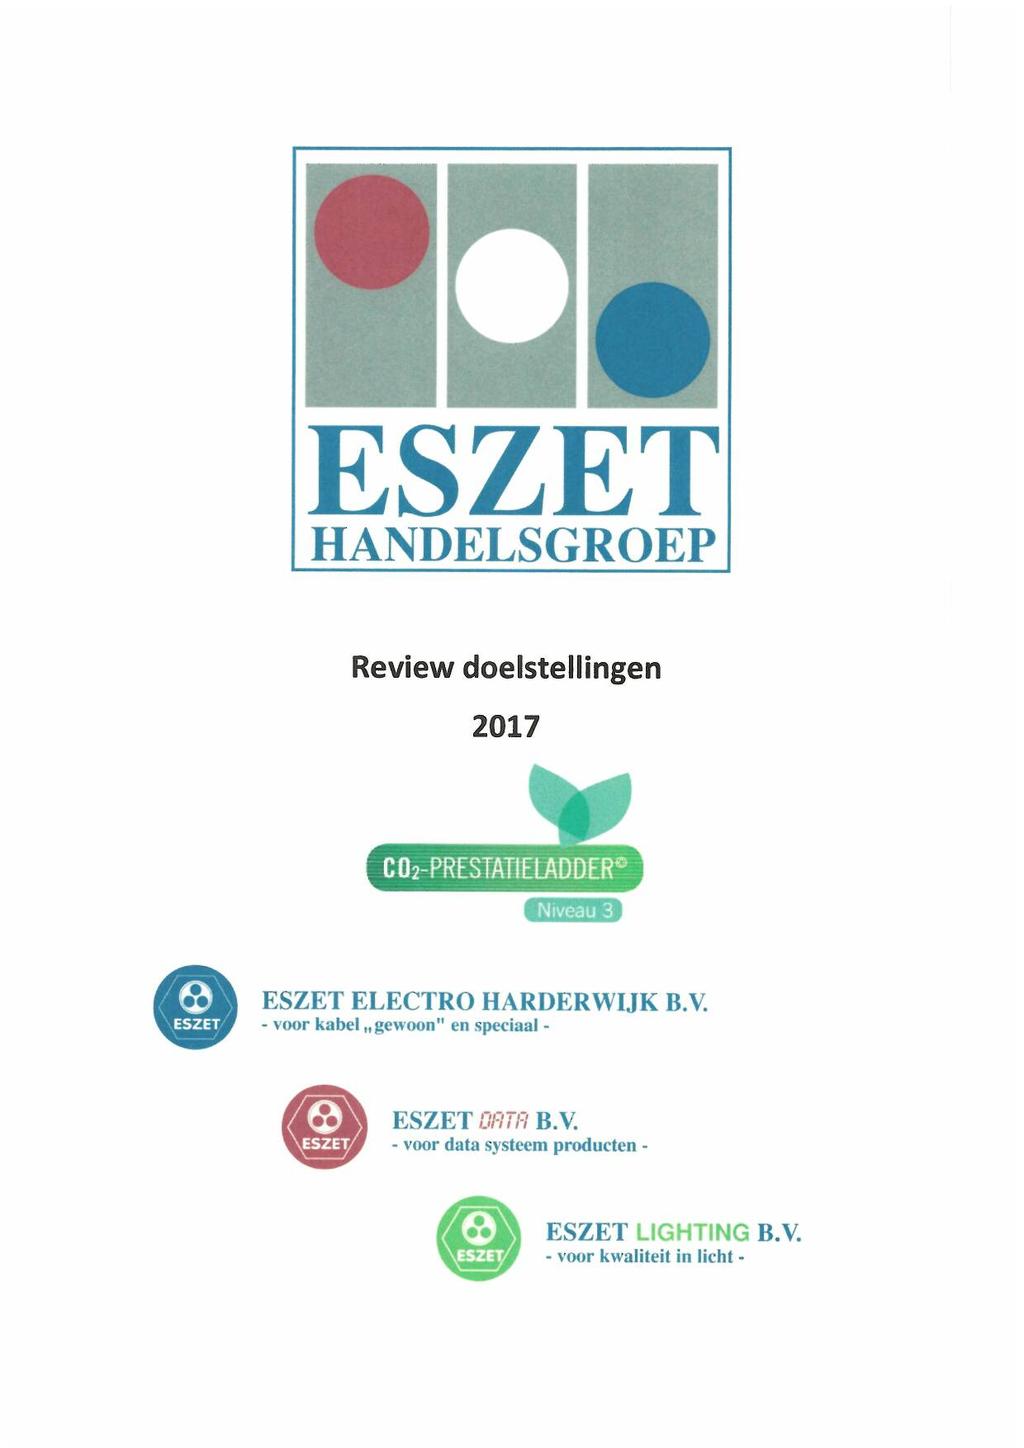 ESZET HANDELSGROEP Review doelstellingen 2017 ESZET ELECTRO HARDERWIJK B.V.